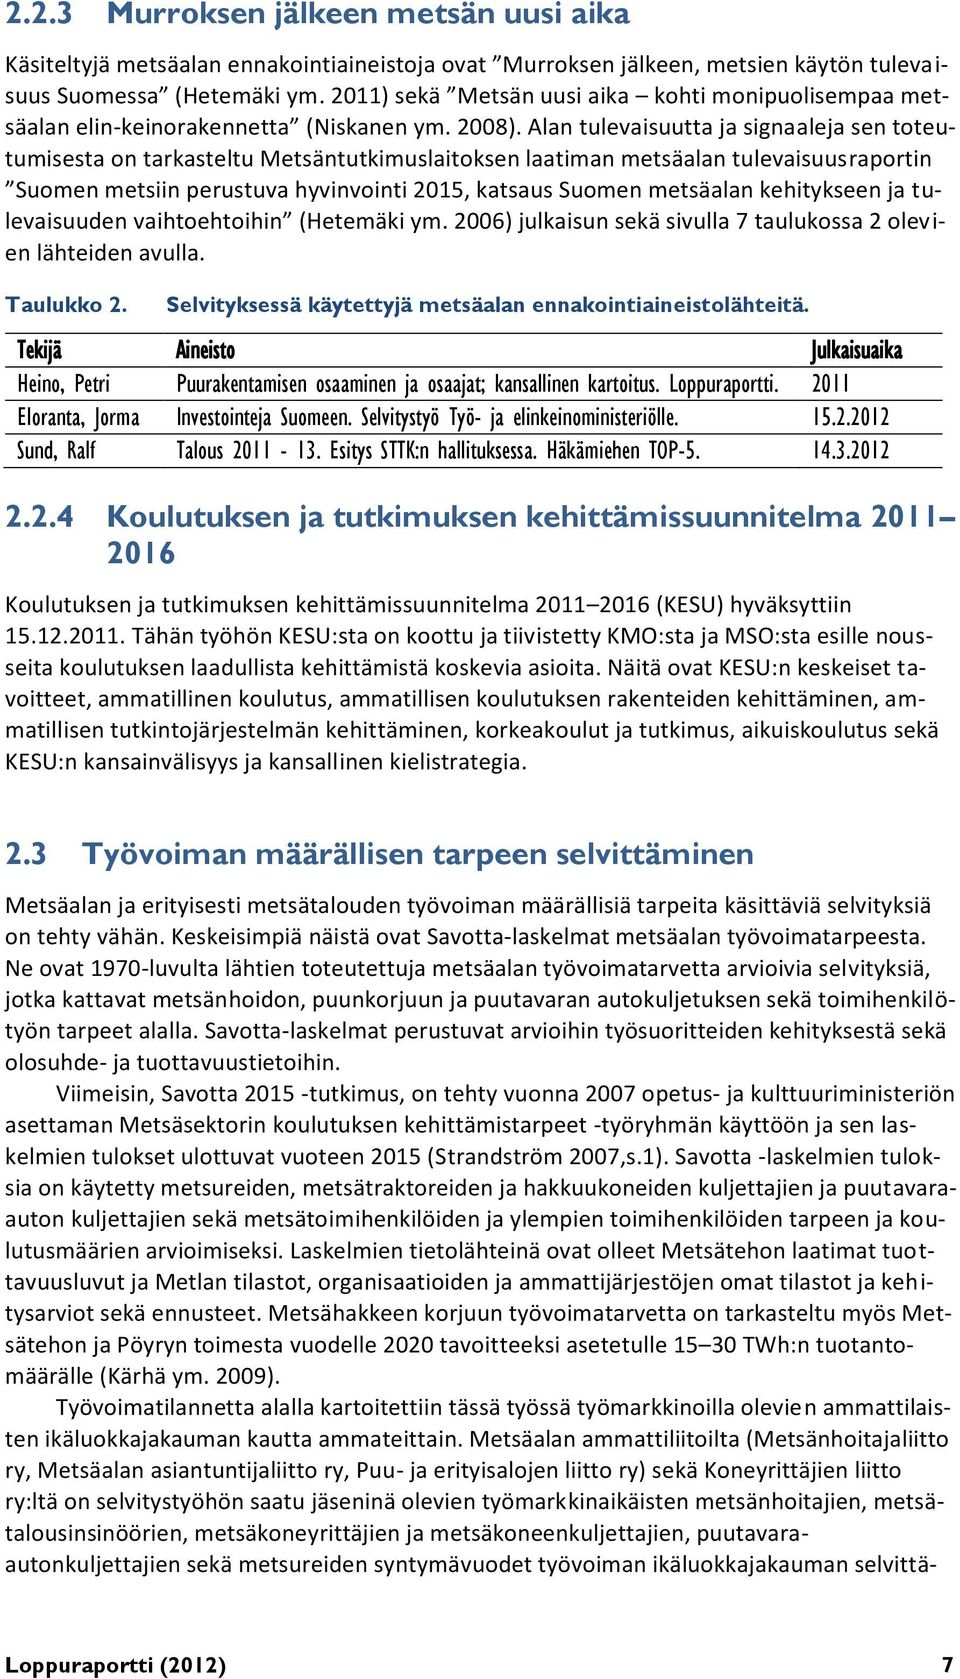 Alan tulevaisuutta ja signaaleja sen toteutumisesta on tarkasteltu Metsäntutkimuslaitoksen laatiman metsäalan tulevaisuusraportin Suomen metsiin perustuva hyvinvointi 2015, katsaus Suomen metsäalan